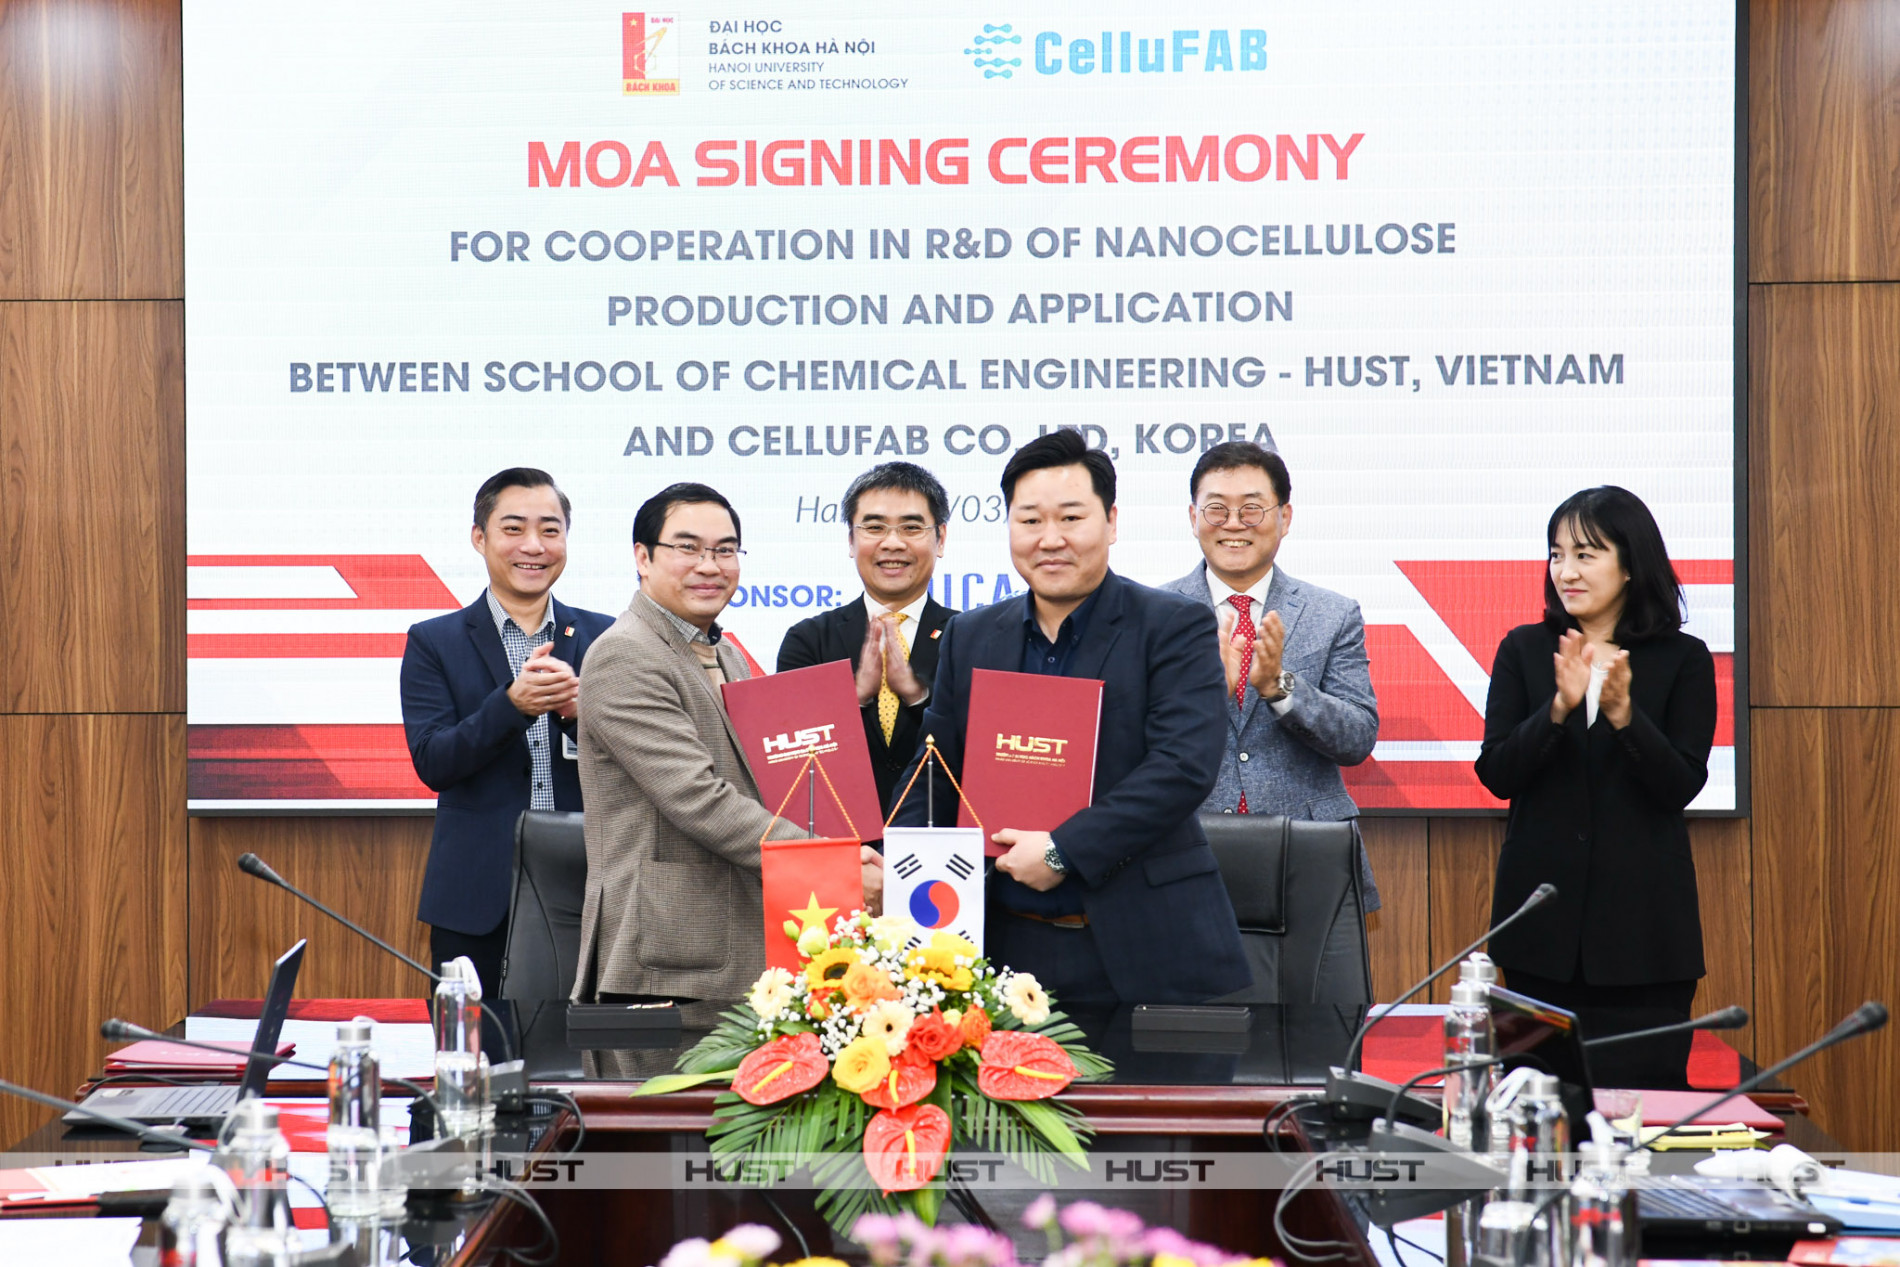 Bách khoa Hà Nội đẩy mạnh hợp tác doanh nghiệp phát triển công nghệ nanocellulose